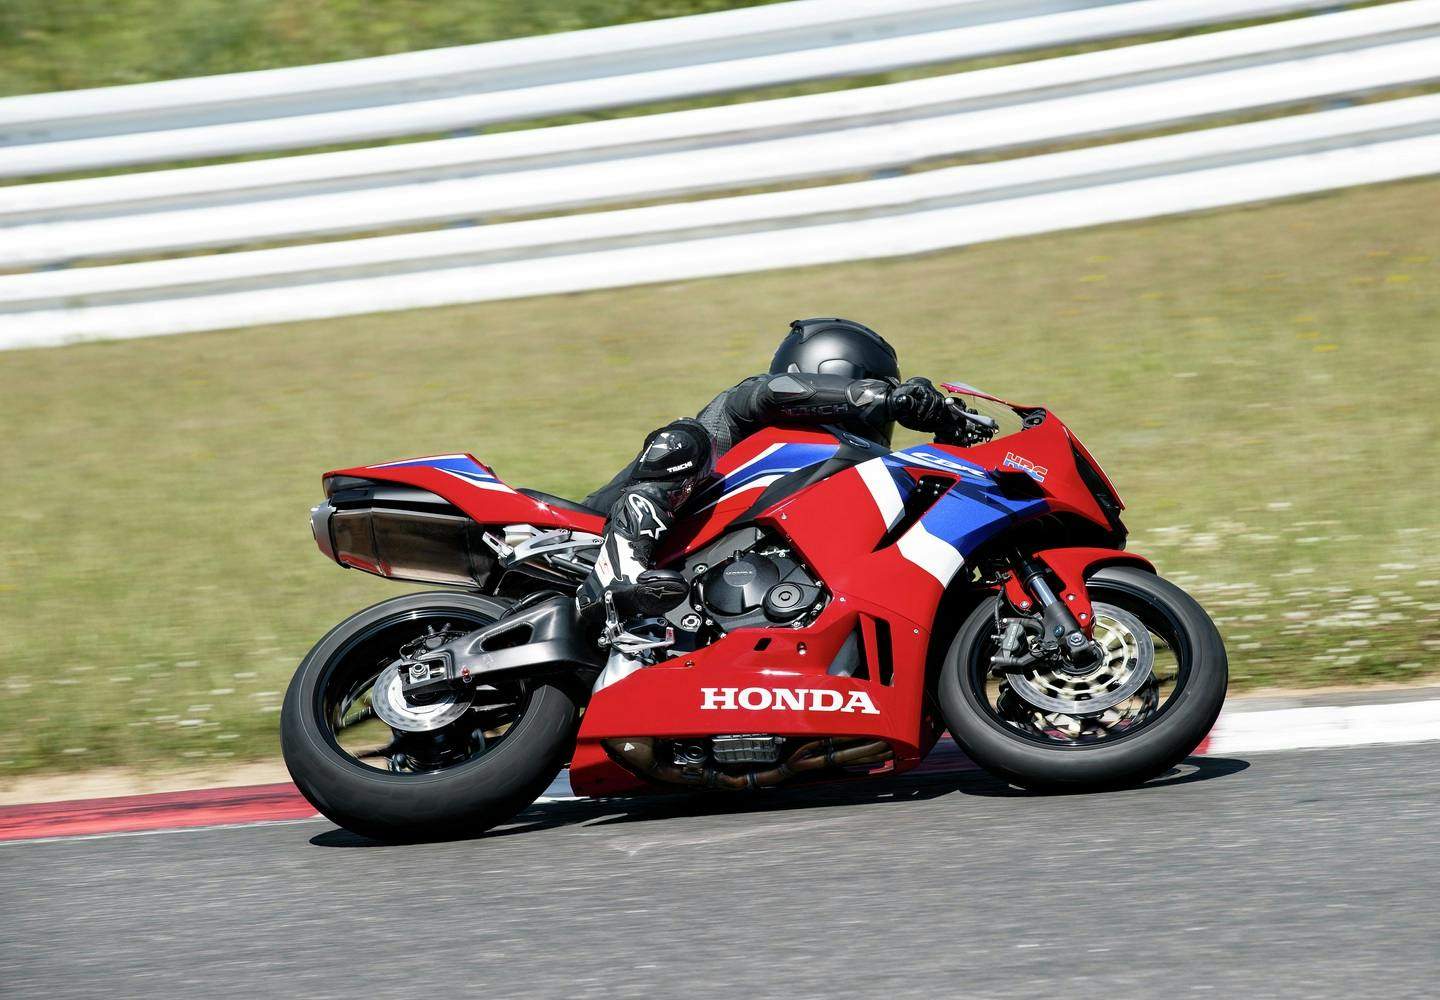 Honda CBR600RR in Grand Prix Red colour on race track